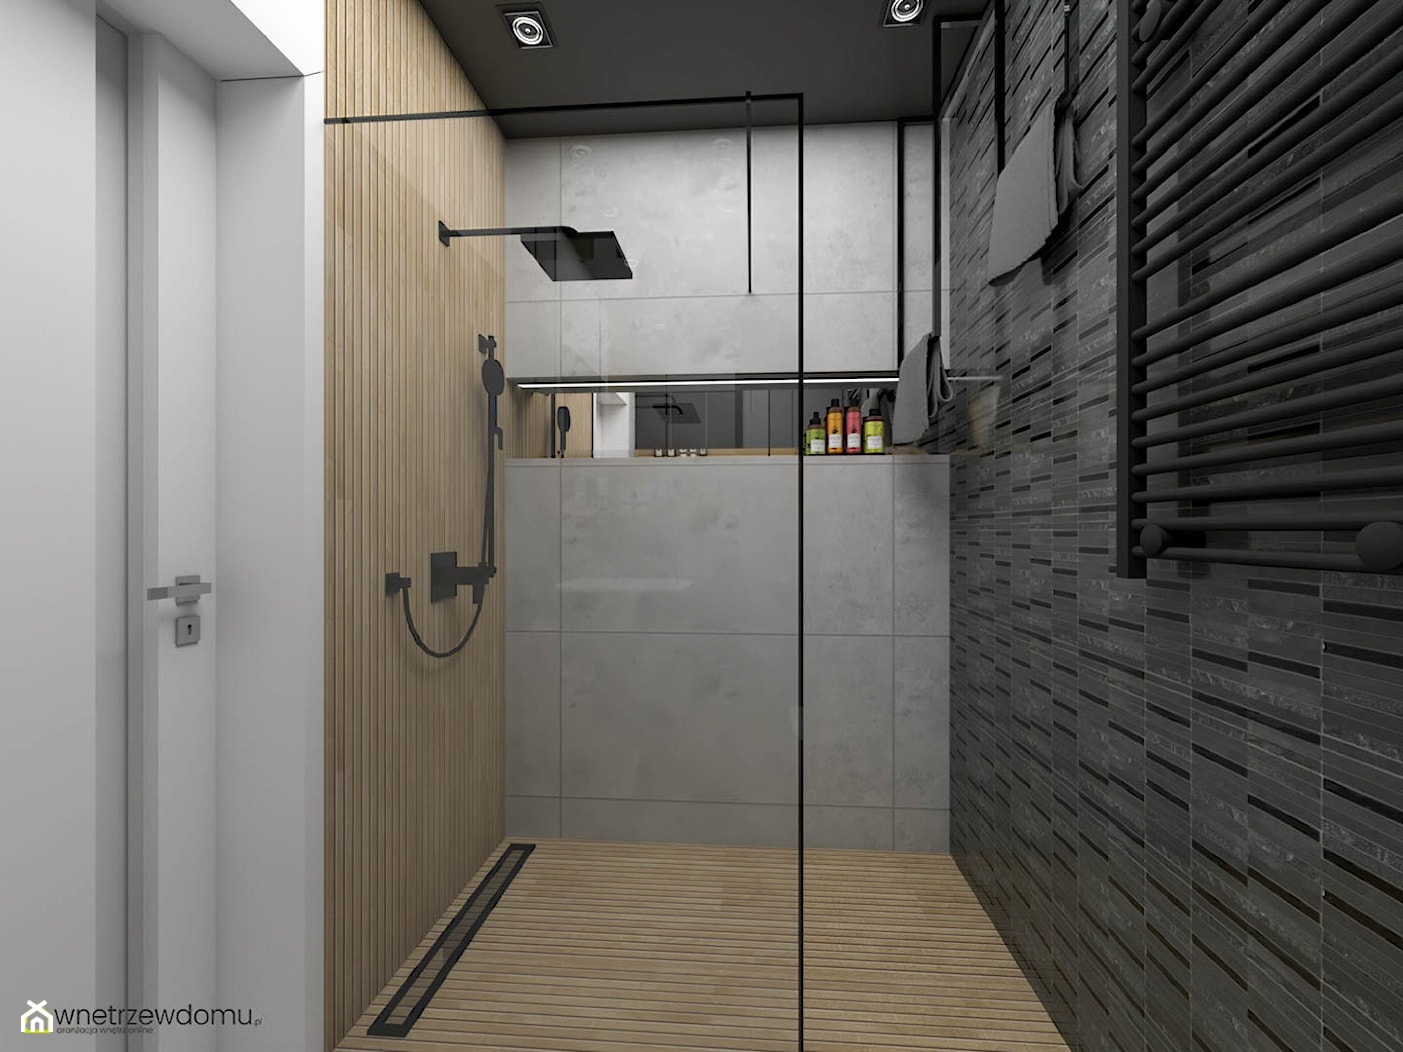 Niewielka łazienka z ciemnym sufitem - zdjęcie od wnetrzewdomu - Homebook